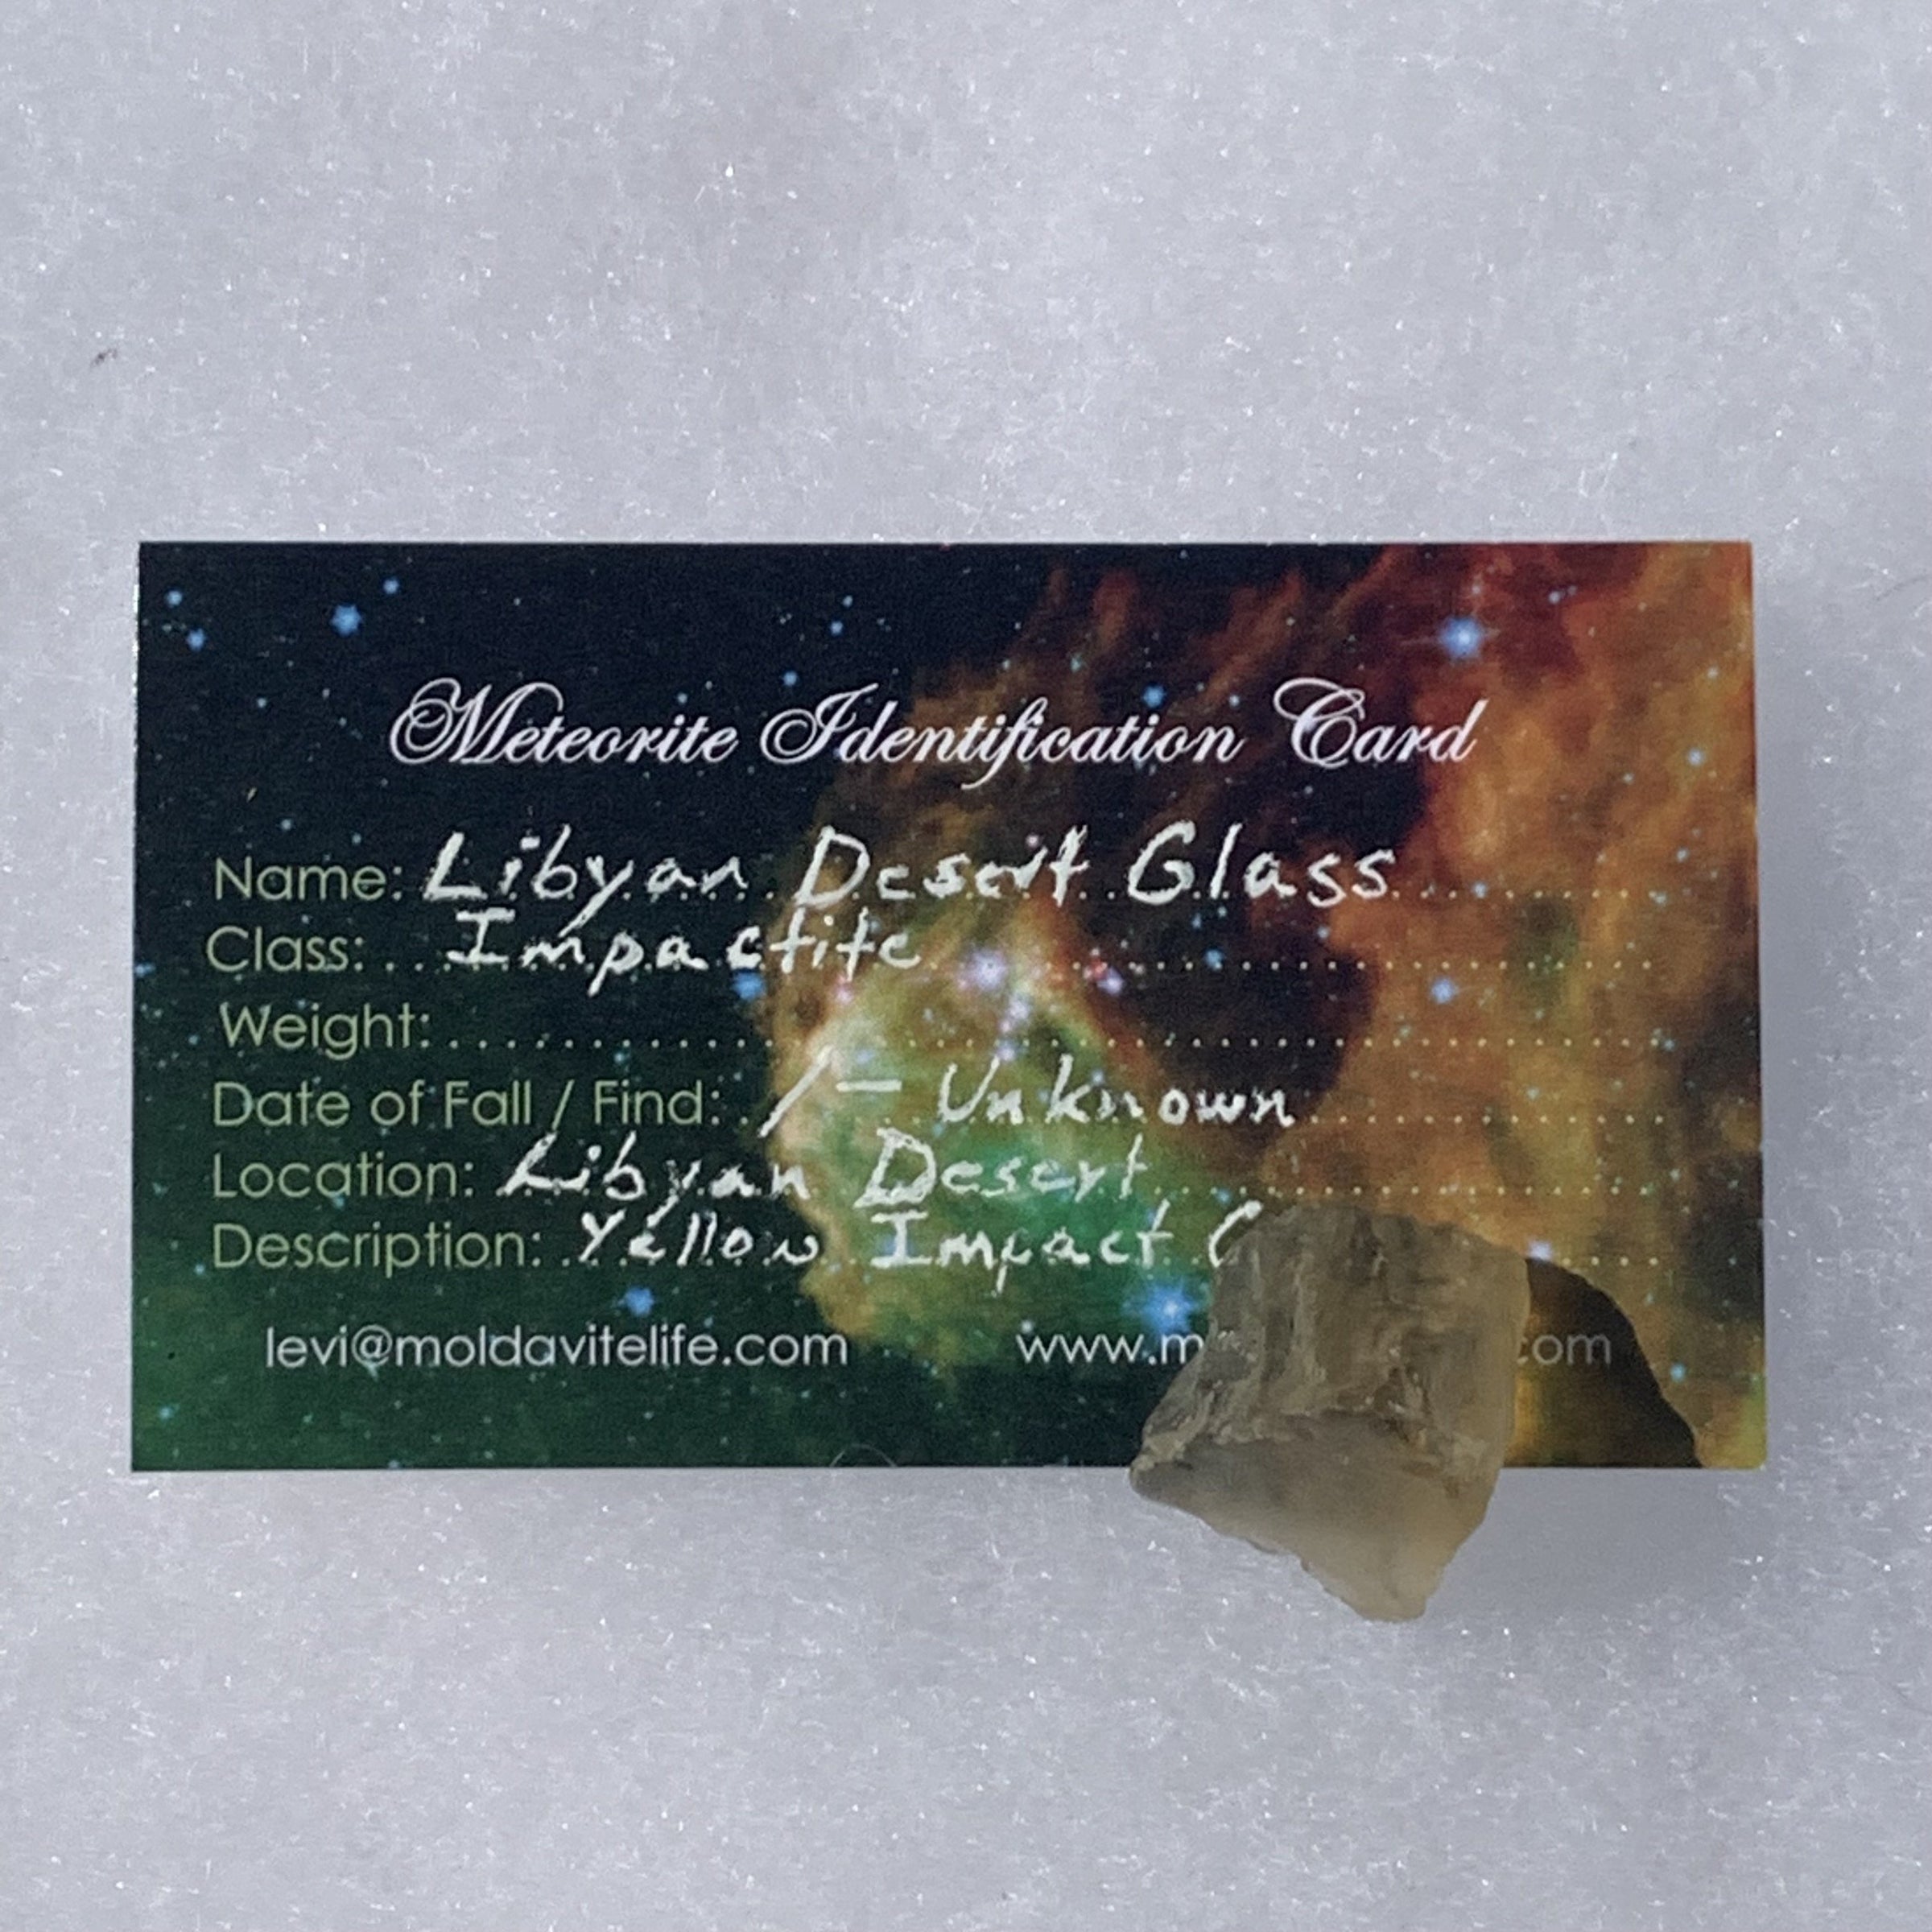 Libyan Desert Glass 6.3 grams-Moldavite Life